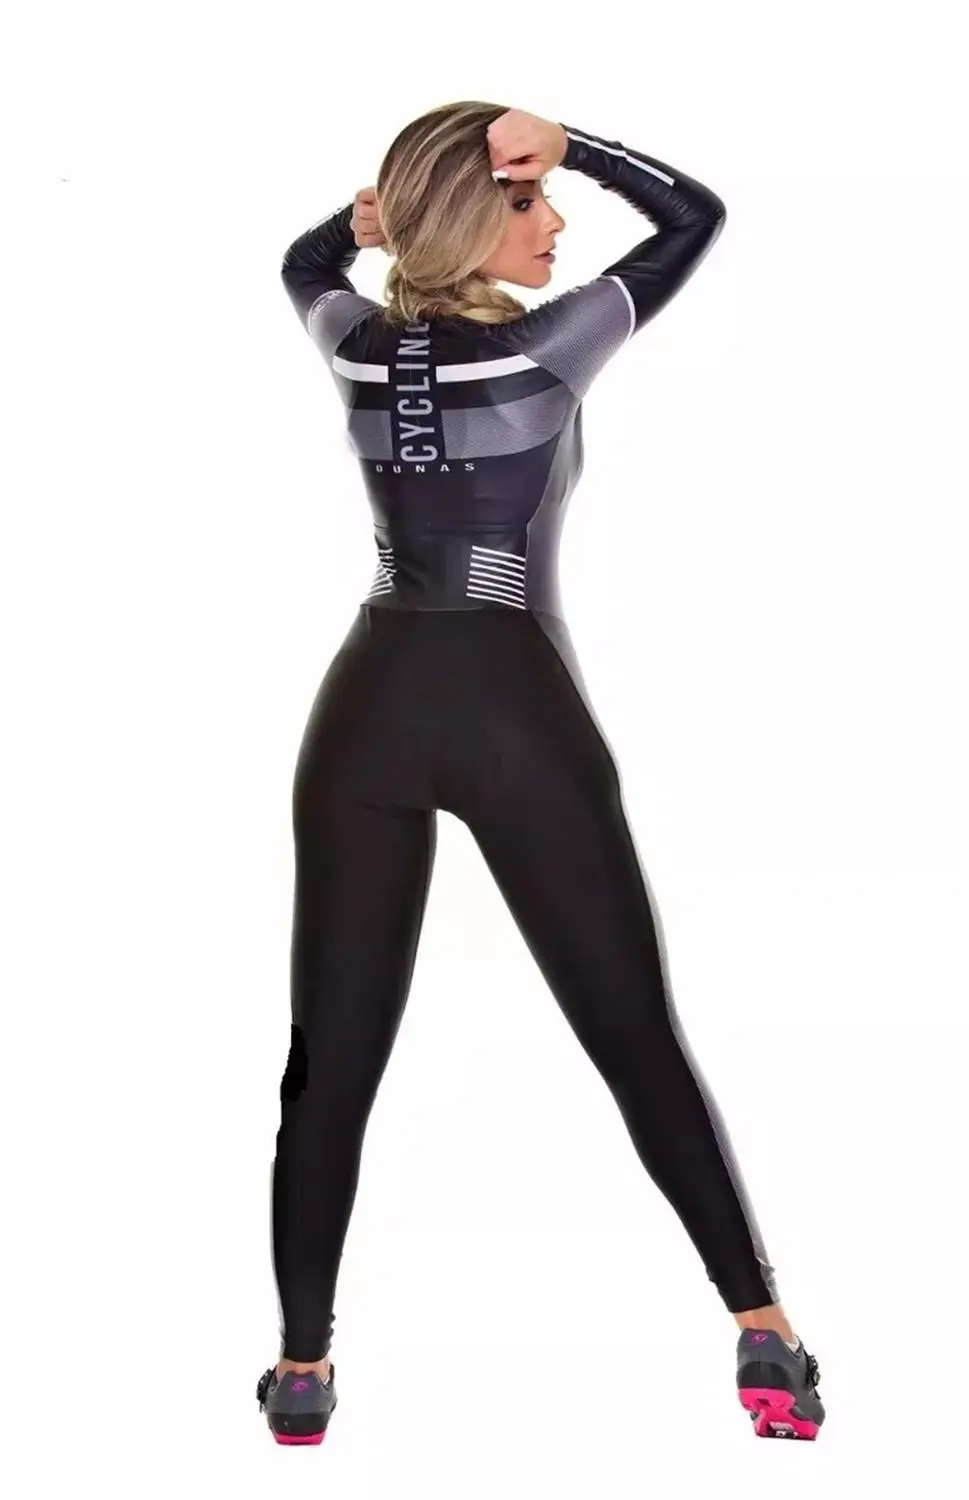 Pro Team триатлонный костюм женский Велоспорт шерстяной облегающий костюм комбинезон Велосипедное трико Ropa ciclismo с длинными рукавами набор гелевый коврик 020